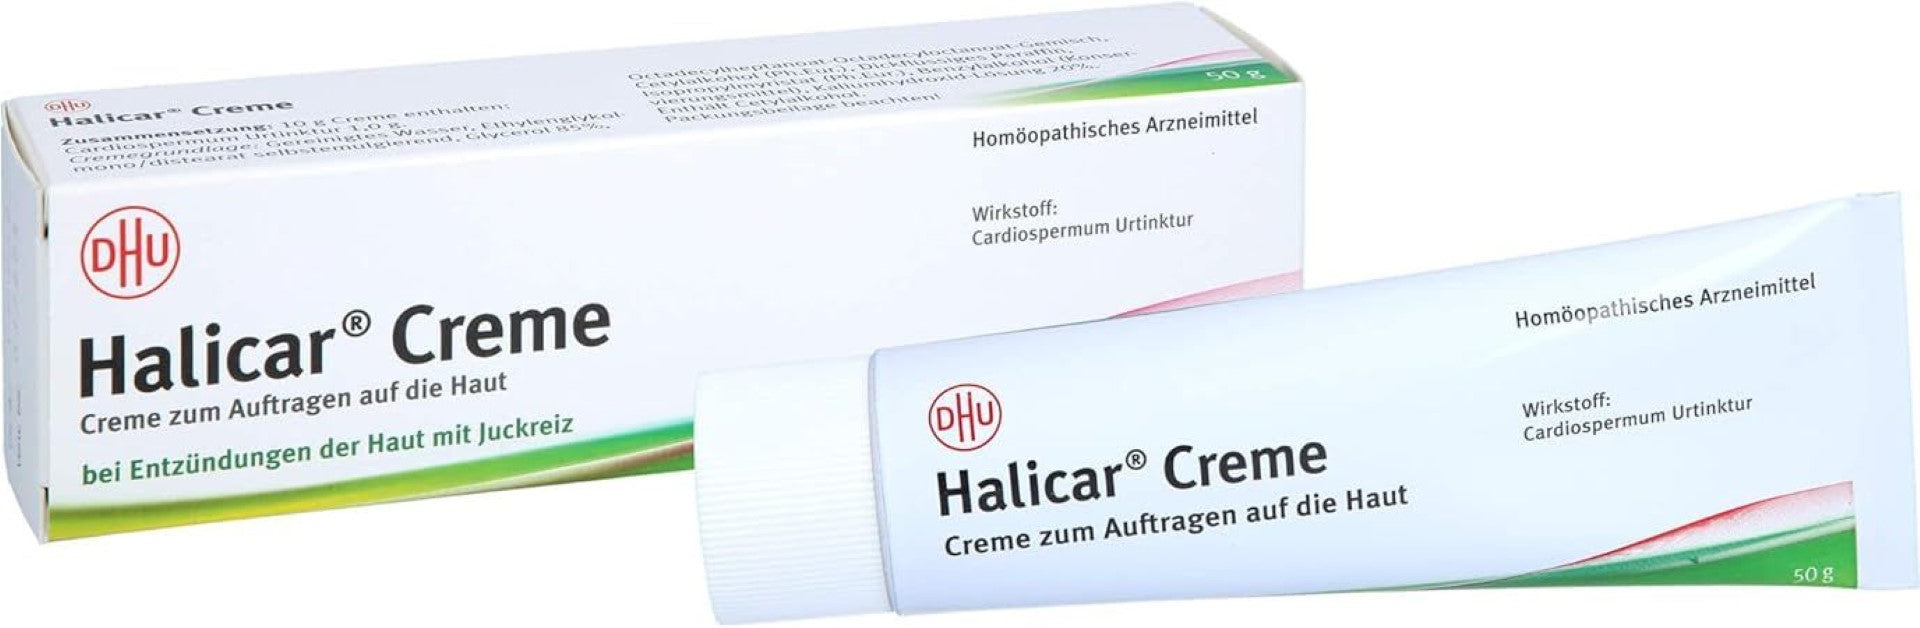 DHU Halicar Creme, bei Entzündungen der Haut mit Juckreiz, 50 g Crème